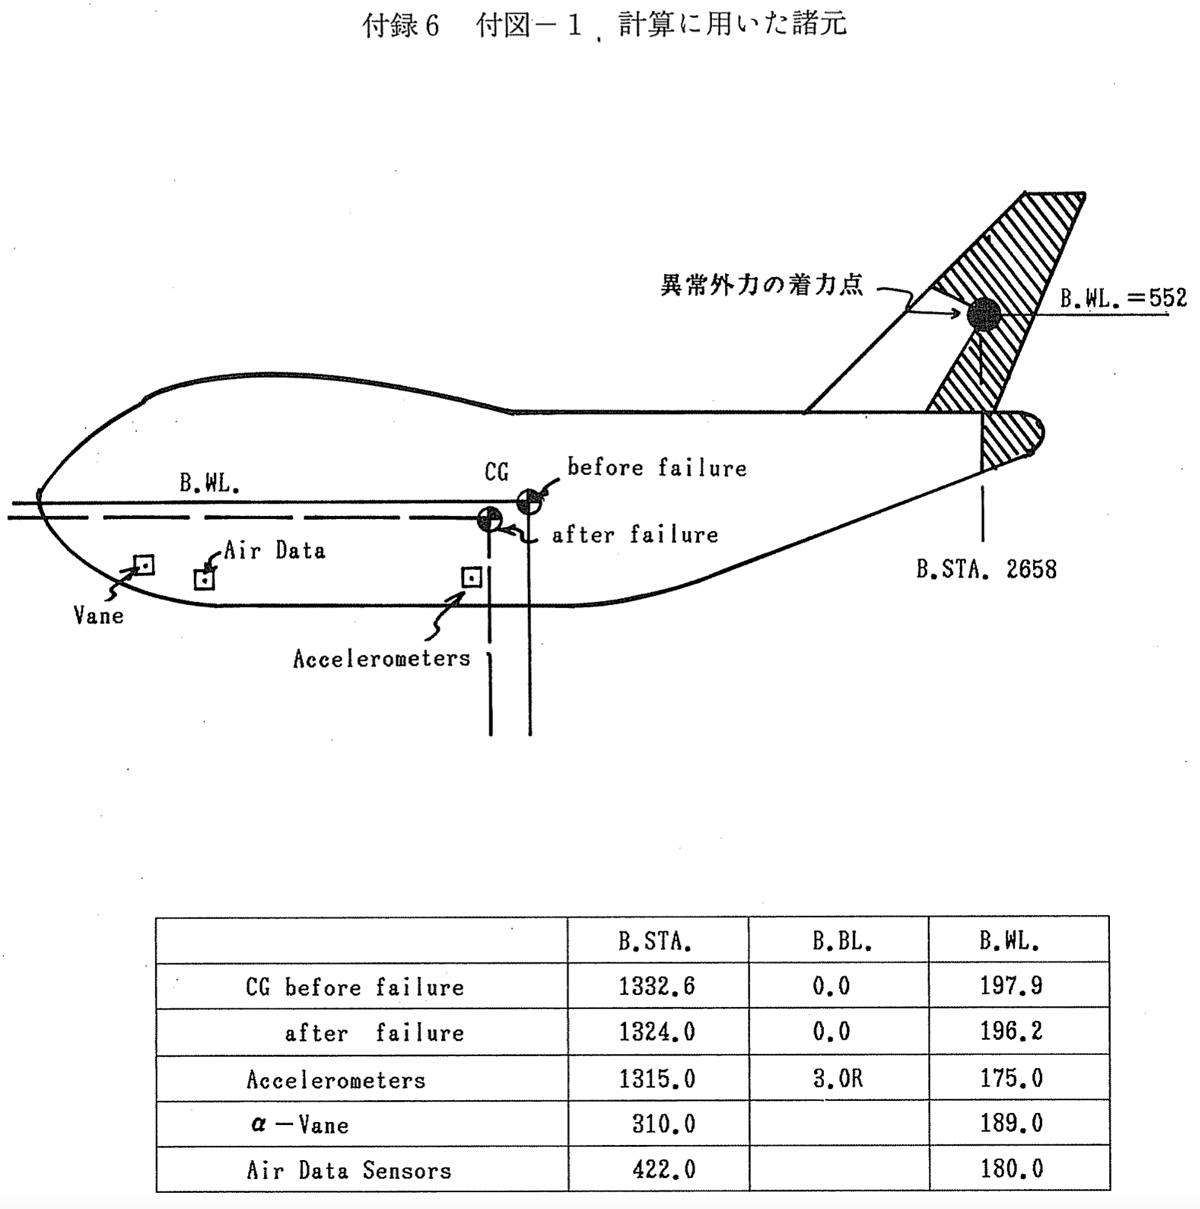 【画像2】『航空事故調査報告書付録』（運輸省、JA8119に関する試験研究資料）にある「異常外力の着力点」を示す概要図）